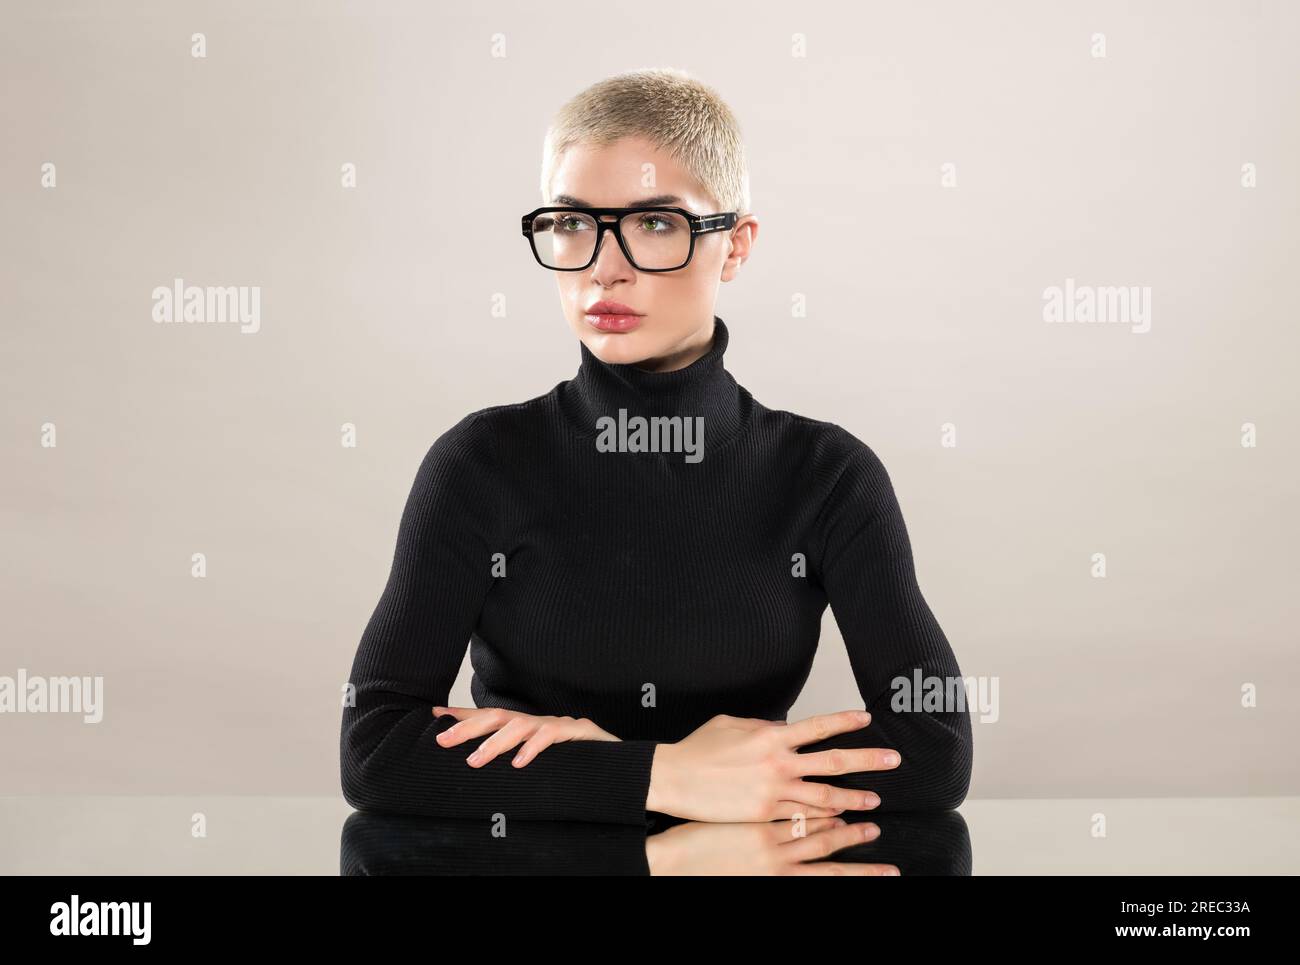 Seriöses weibliches Modell mit schwarzem Rollkragenpullover und Brille kreuzt die Arme, während es auf einem Spiegeltisch auf grauem Hintergrund sitzt und wegschaut Stockfoto